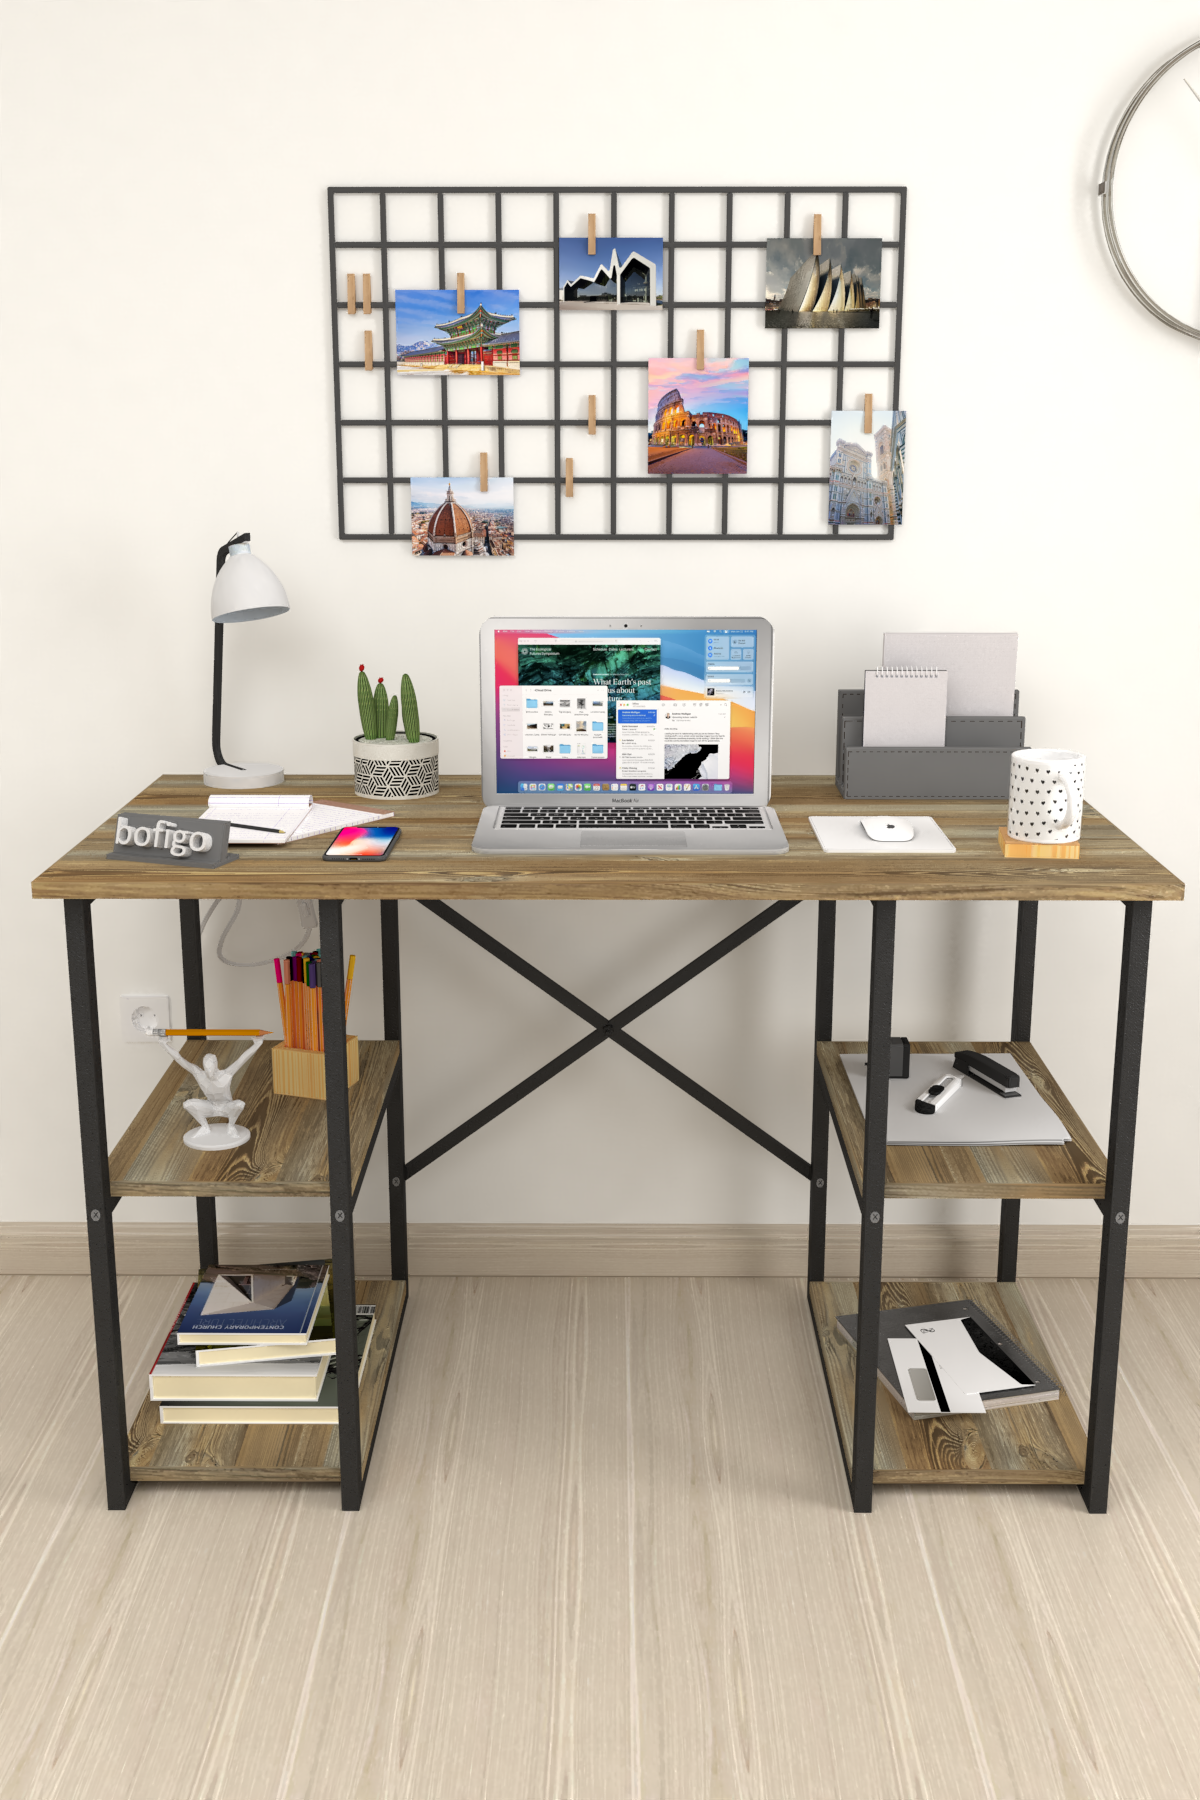 Bofigo 4 Shelf Study Desk 60x120 cm Patik